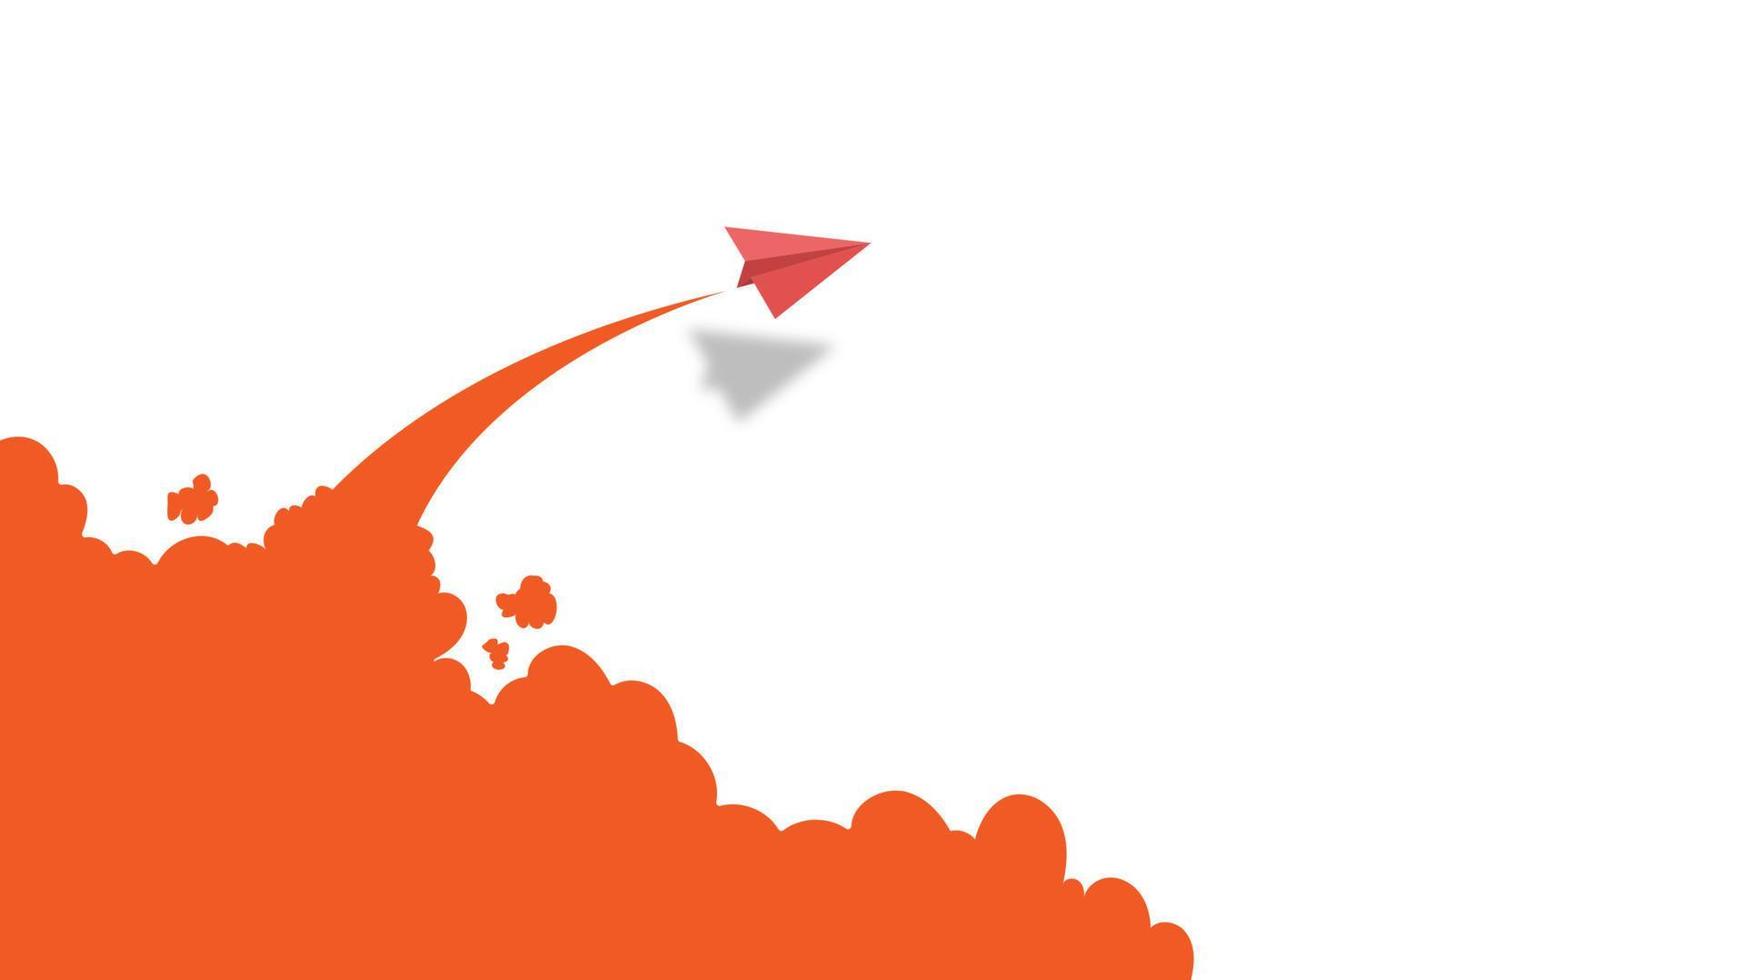 líder de aviones de papel blanco y rojo volando juntos en el cielo azul sobre fondo de nubes. concepto creativo idea de éxito empresarial y liderazgo en el diseño de estilo de arte artesanal de papel. ilustración vectorial vector